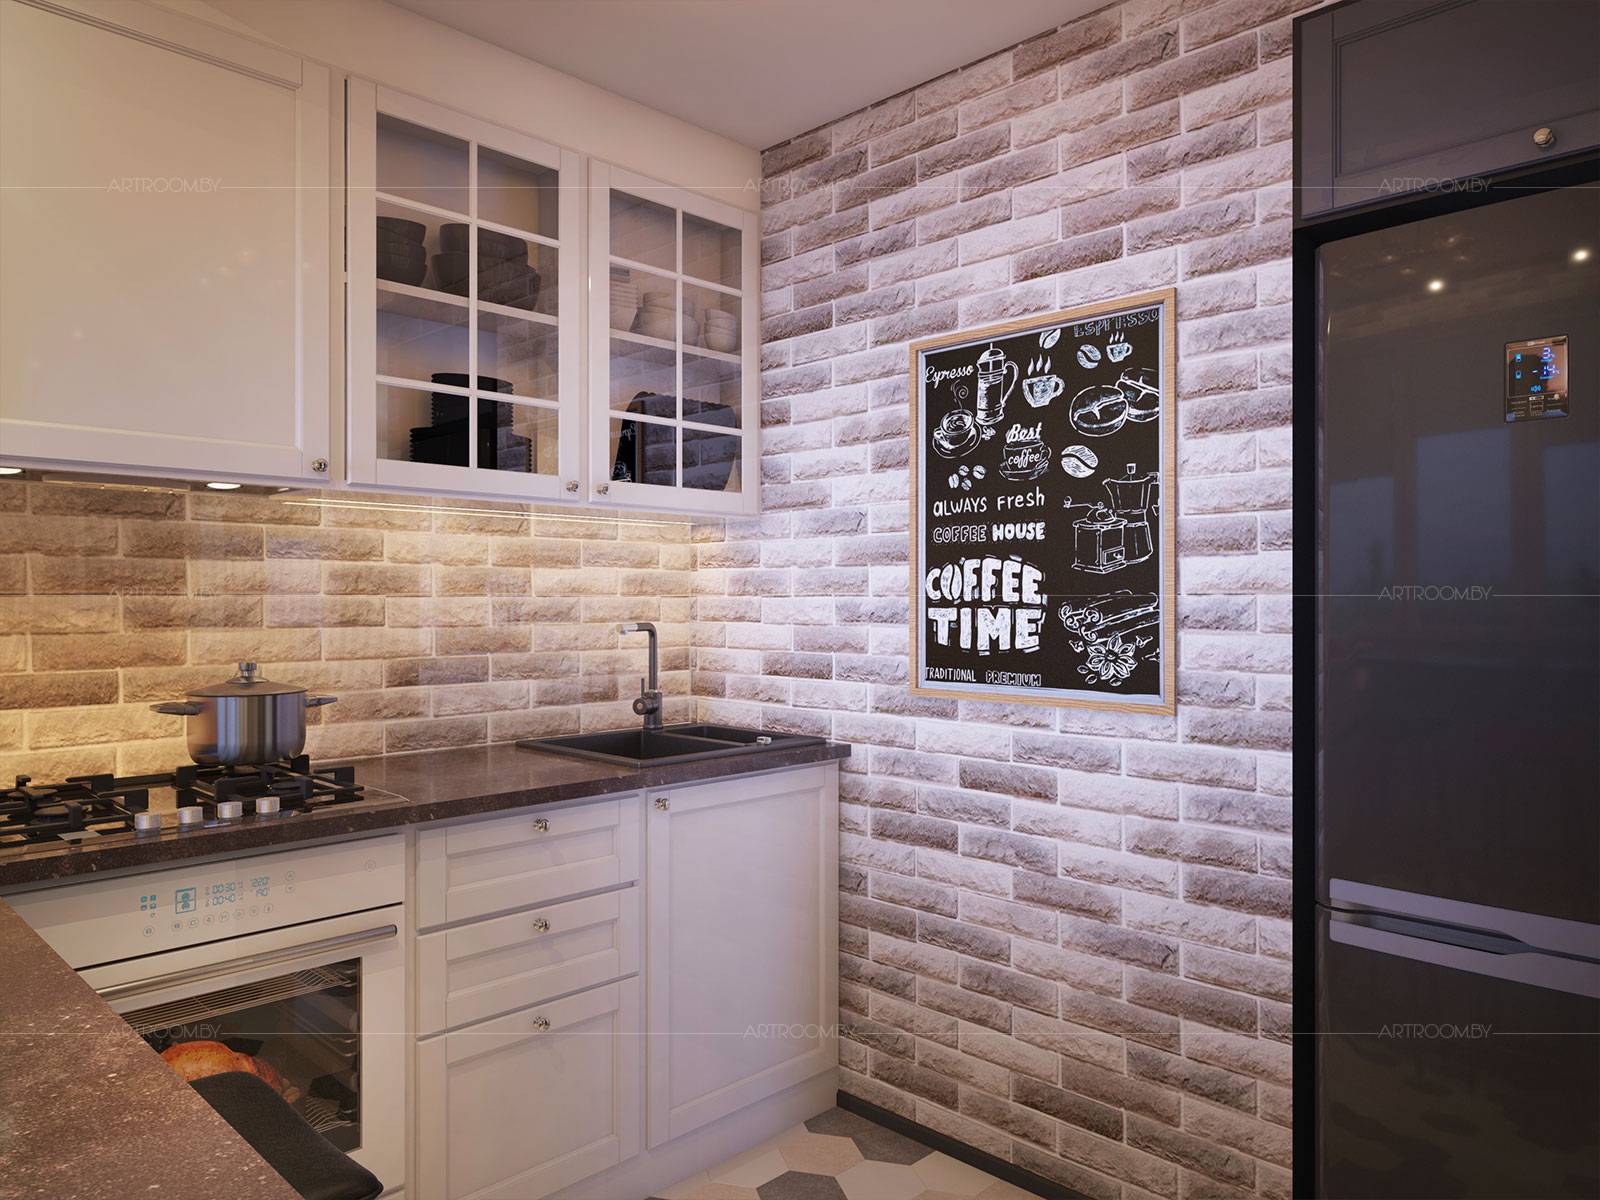 Кирпичная стена на кухне: материал и дизайн